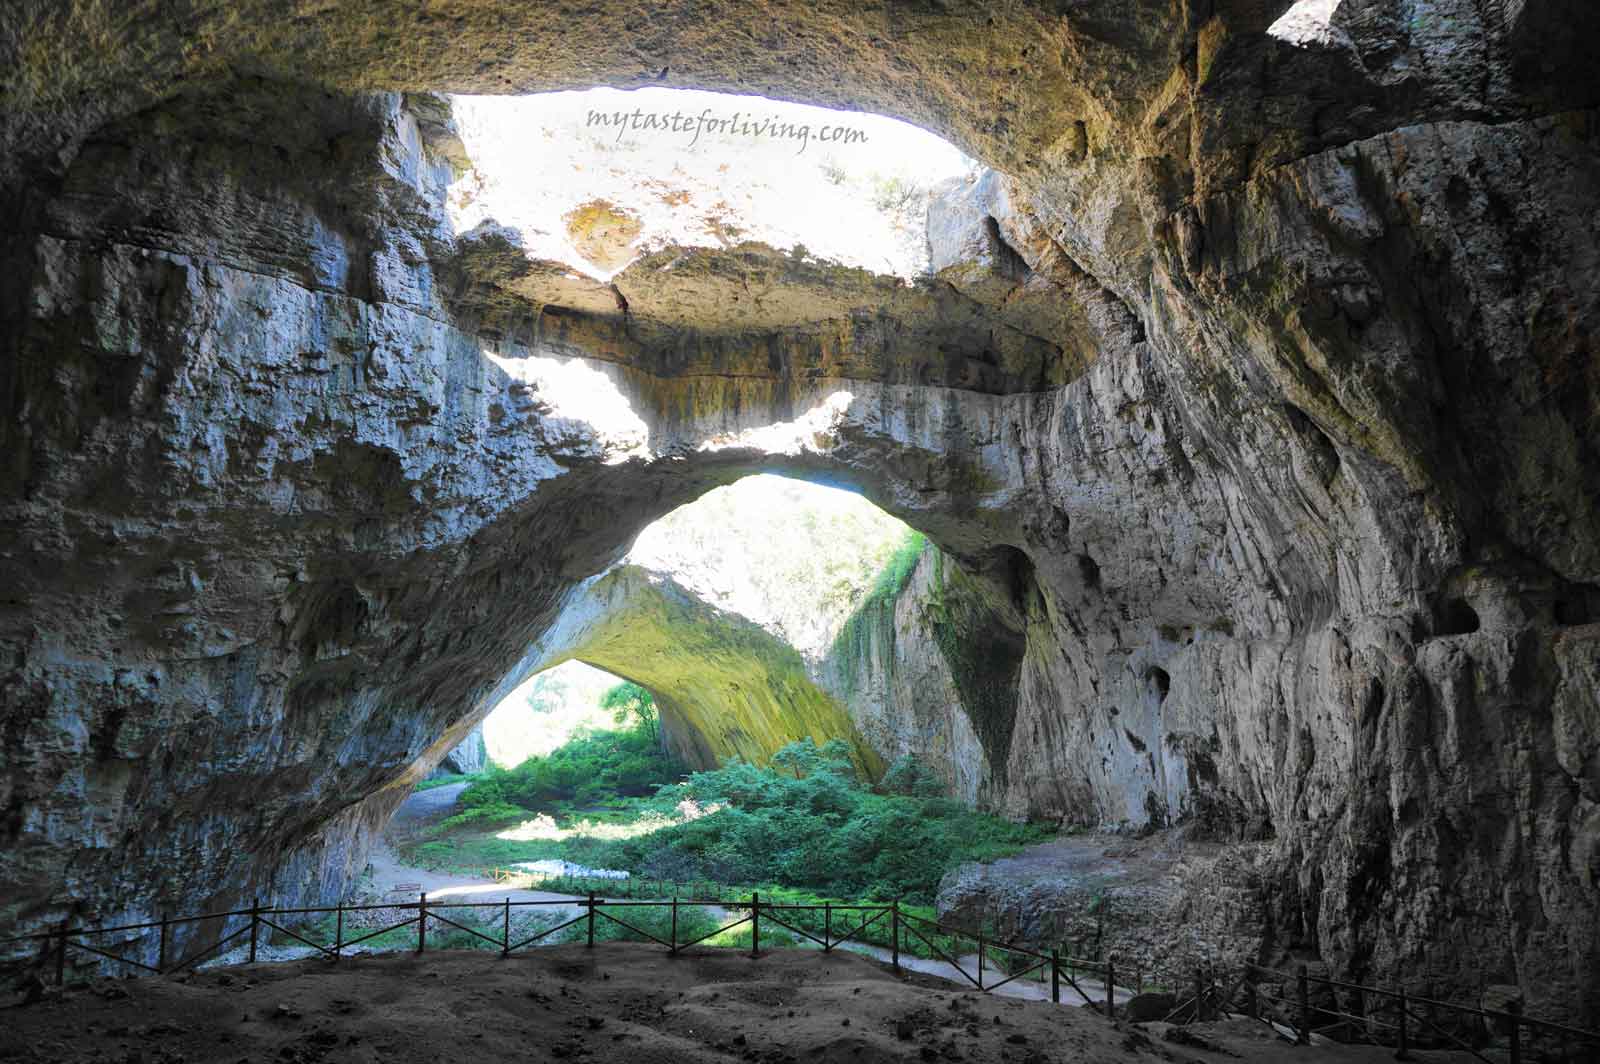 Деветашката пещера (известна още като Маарата или Окната) се намира близо до село Деветаки, община Ловеч, на десния бряг на река Осъм и е сред най-забележителните пещери в България. Общата ѝ дължина е 2 442 метра, височината - 60 метра, а привходната й зала е най-голямата не само в България, но и в цяла Югоизточна Европа. 